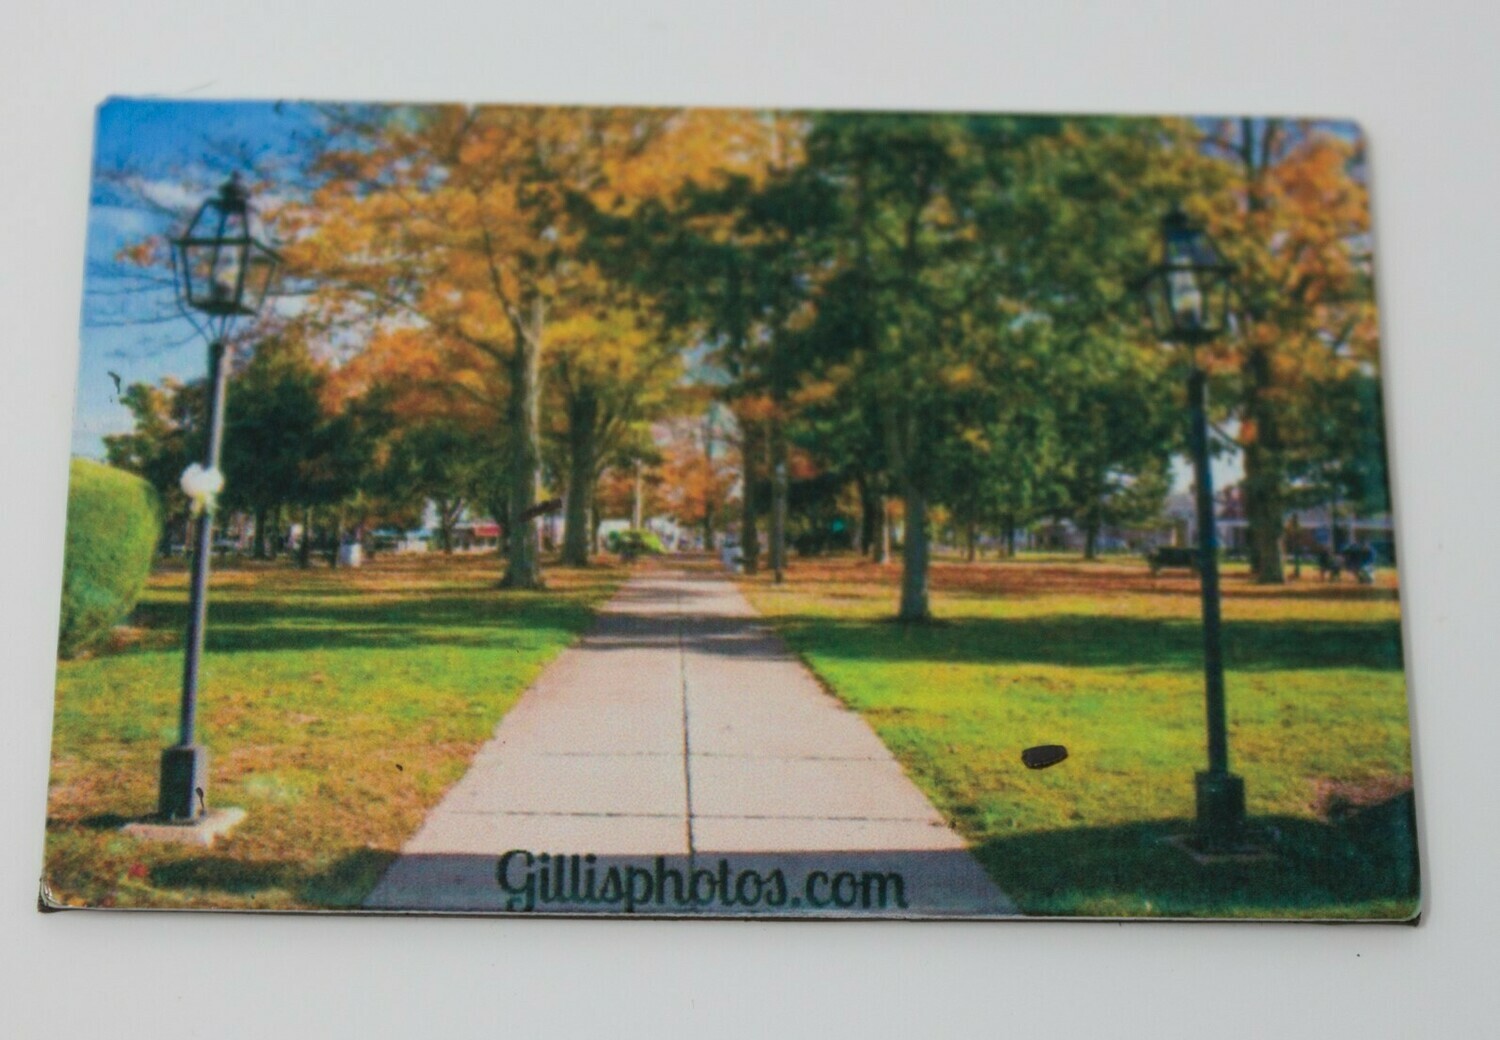 Special Order --Foxboro Gallery-2"x 3" Photo Magnet
Foxboro Common in Autumn